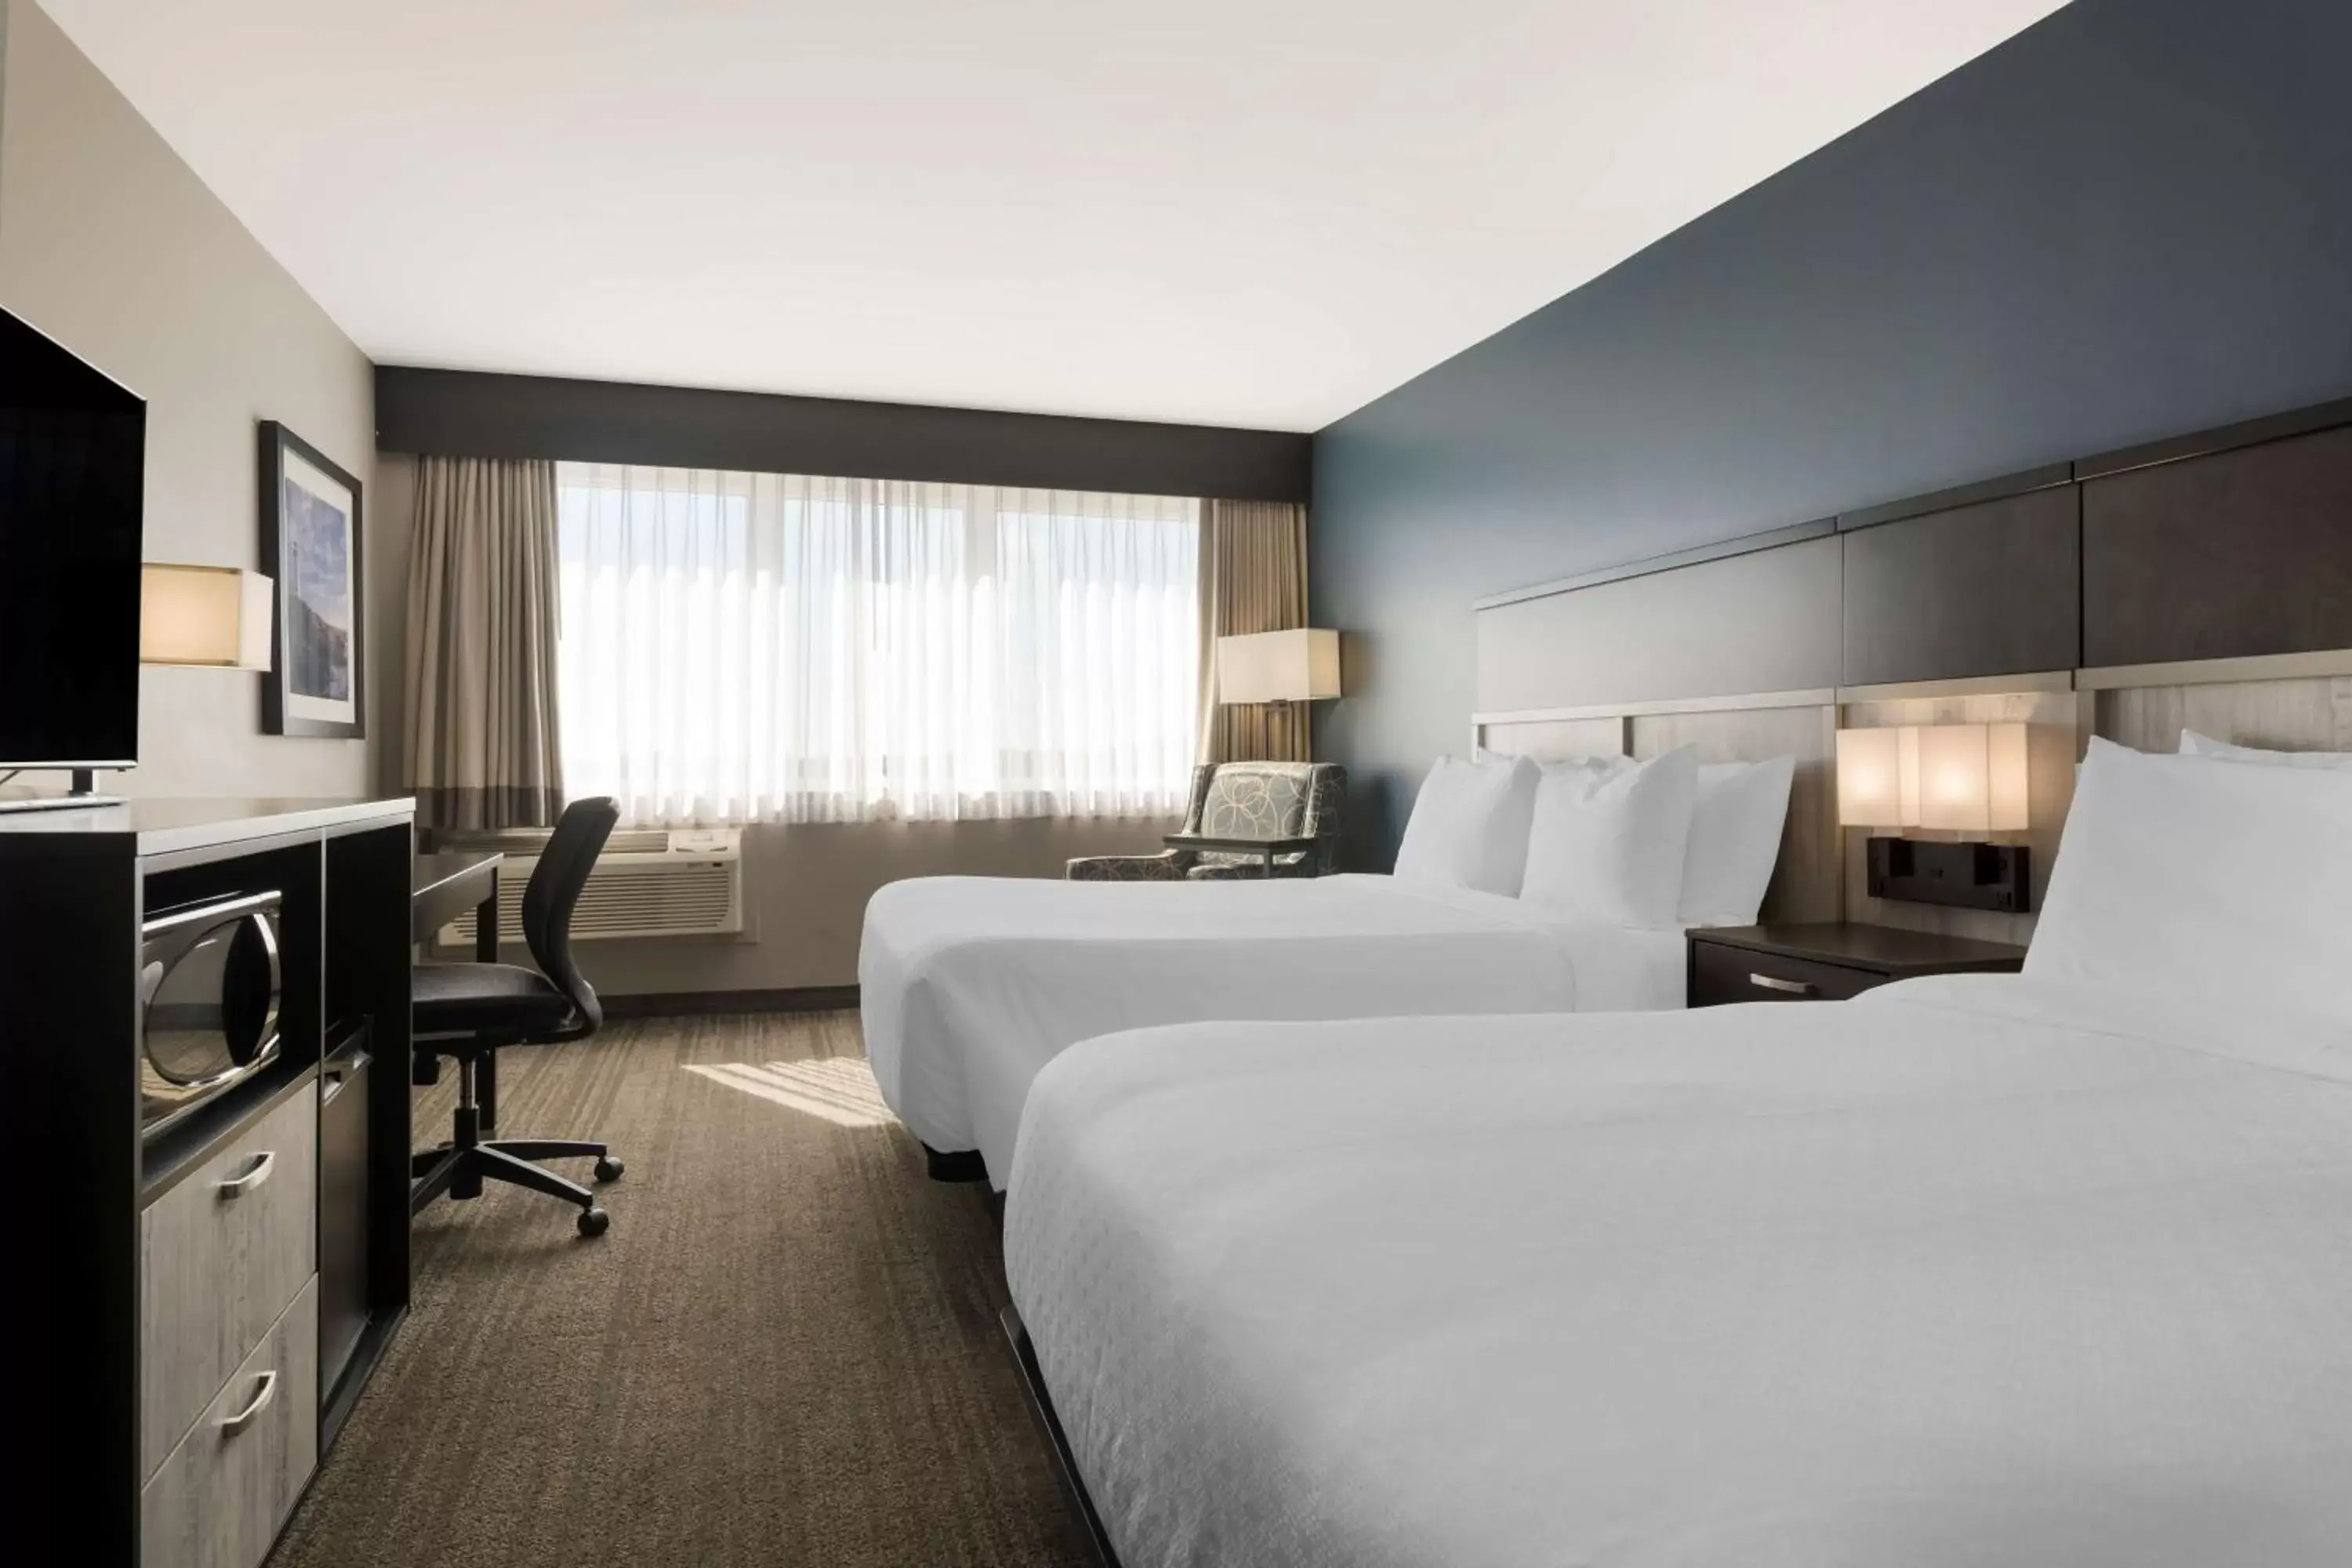 Bedroom, Bed in Best Western Plus Chocolate Lake Hotel - Halifax